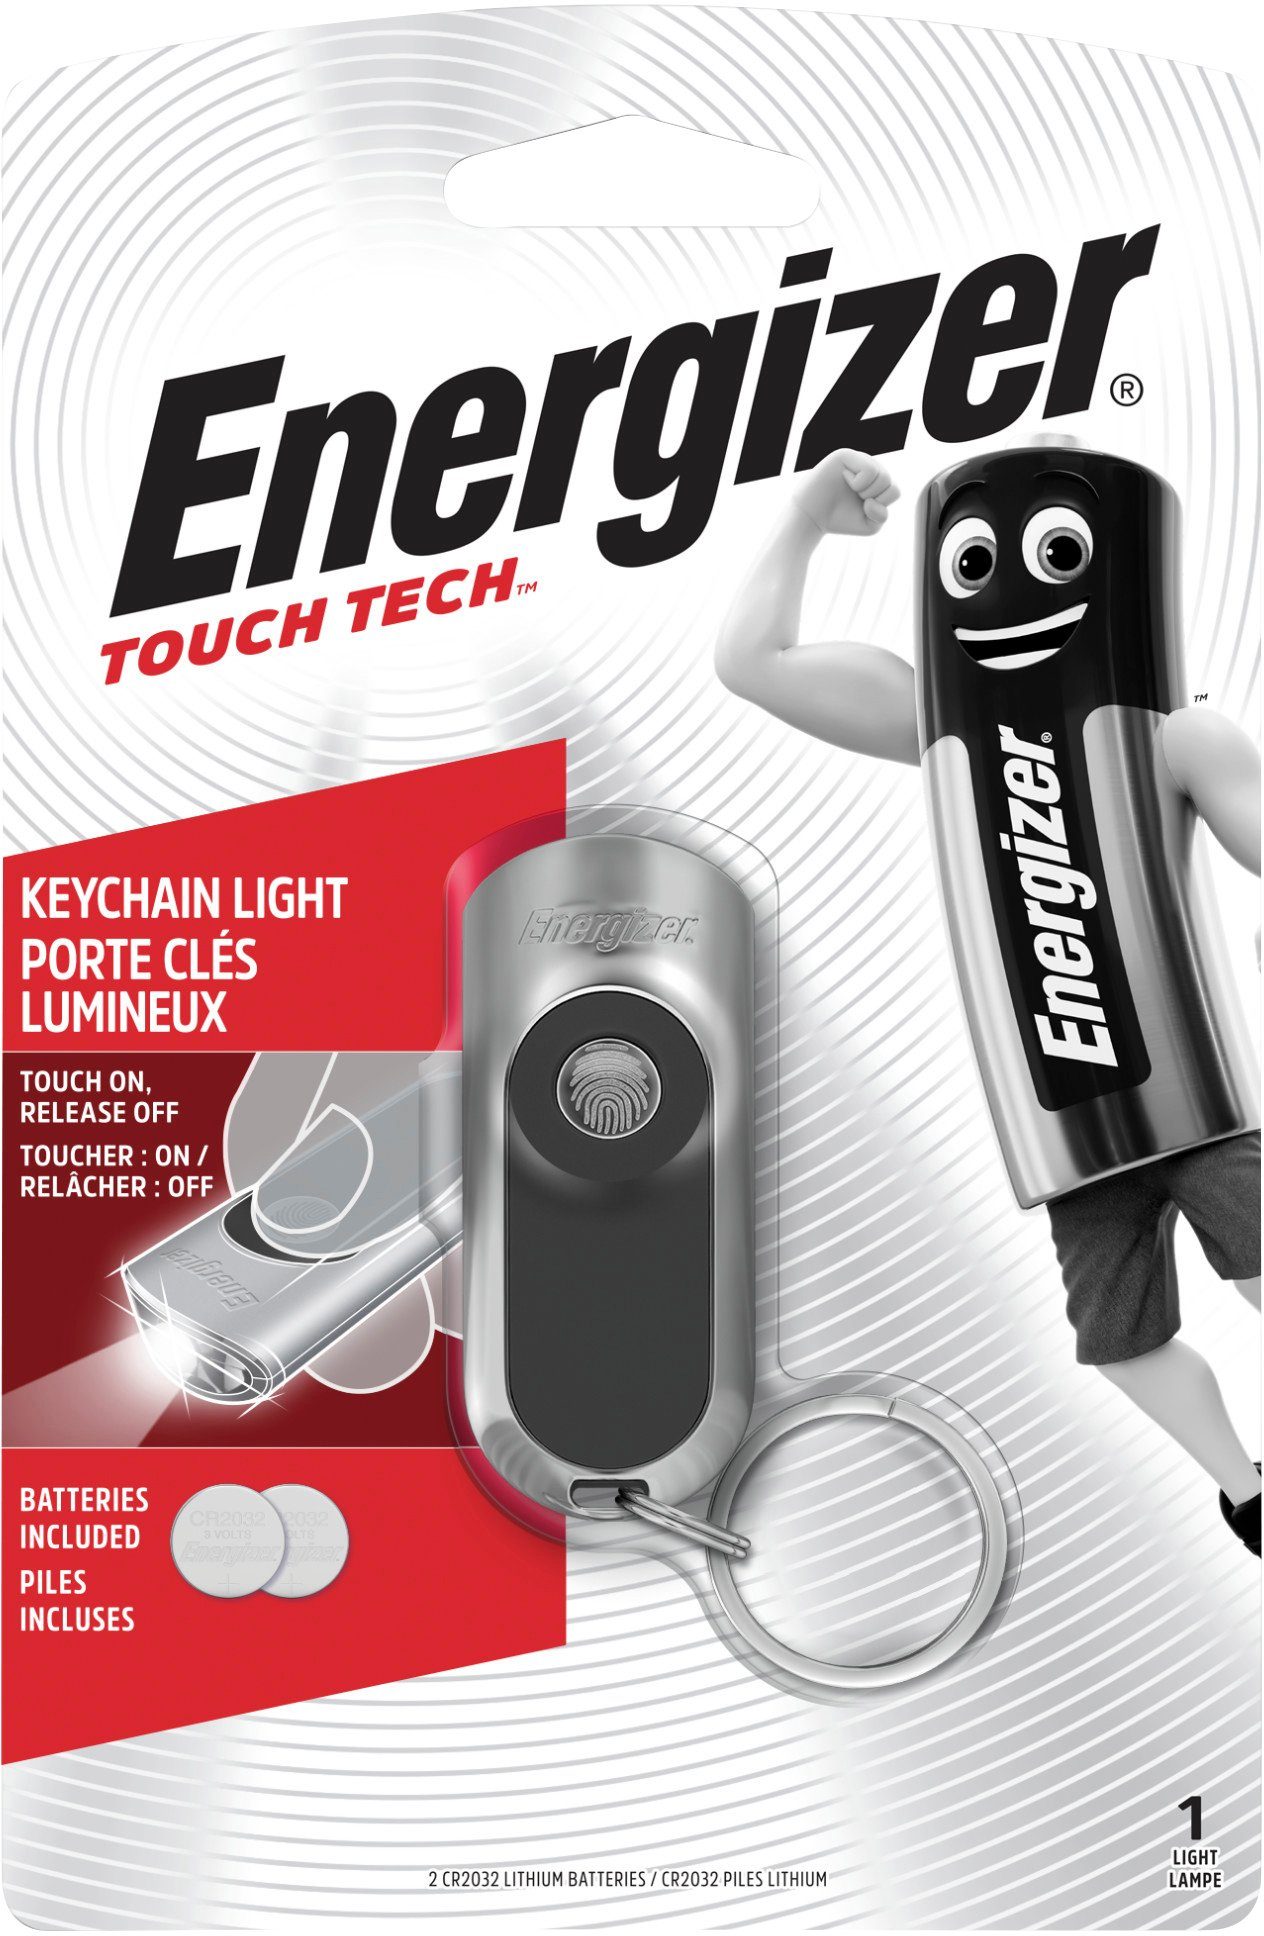 Energizer 20 10m Tech von Taschenlampe Laufzeit eine und Keychain über Reichweite Light, Touch zu und eine 5 LED Stunden das bis Lumen